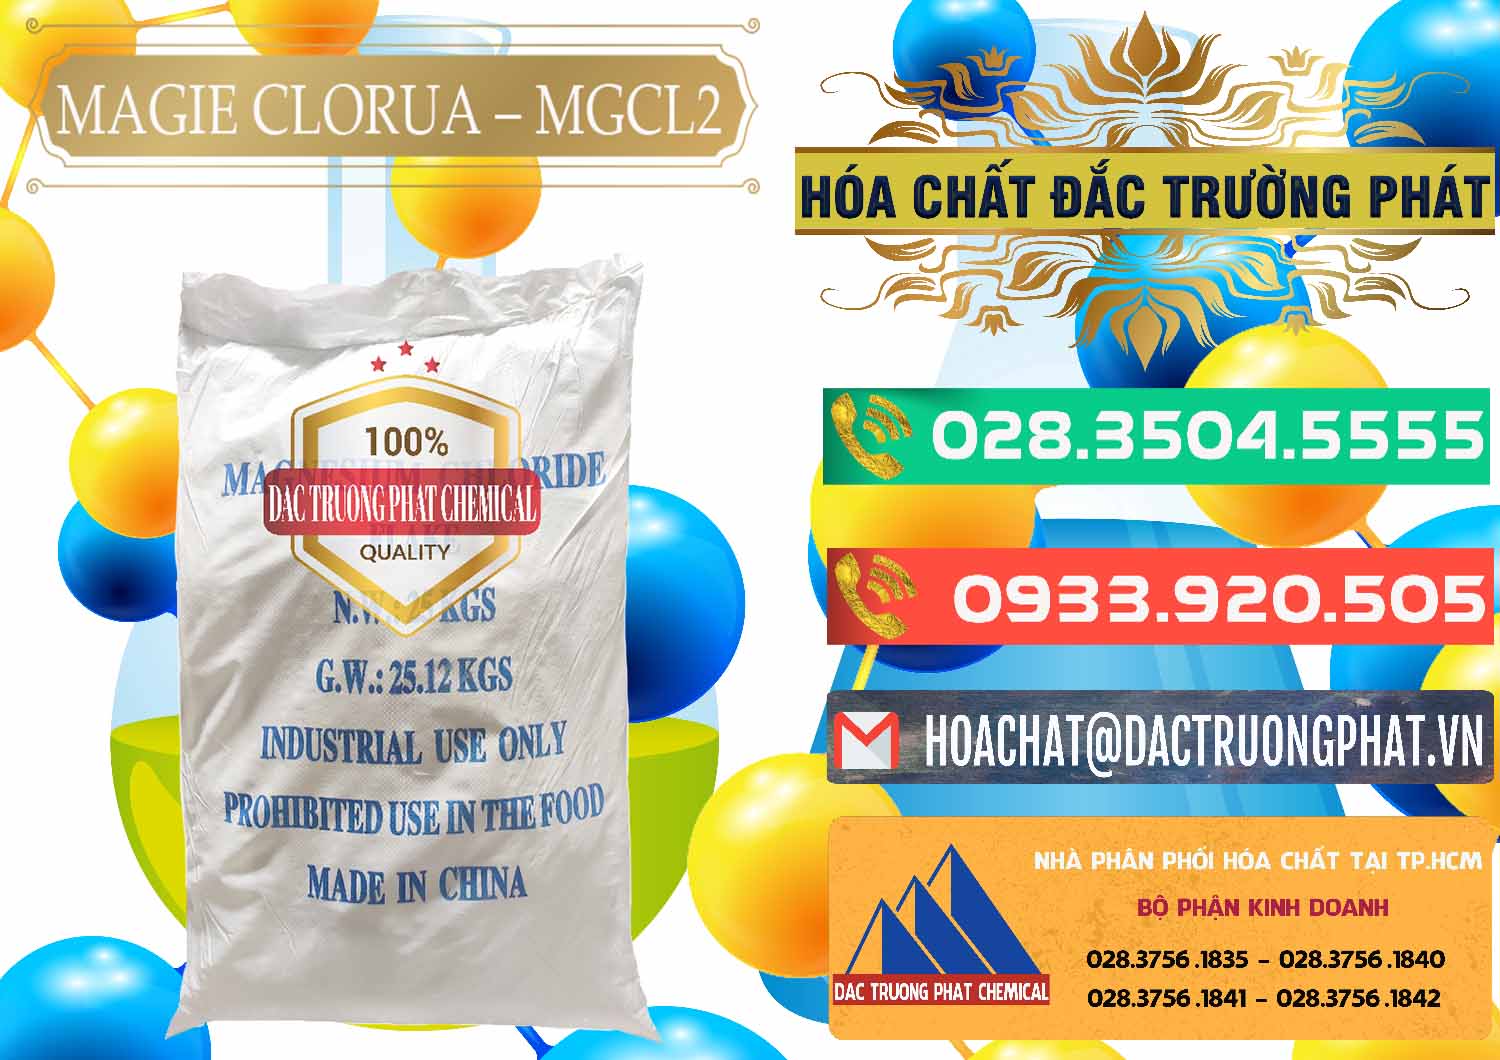 Cty bán _ cung cấp Magie Clorua – MGCL2 96% Dạng Vảy Trung Quốc China - 0091 - Công ty cung ứng _ phân phối hóa chất tại TP.HCM - congtyhoachat.com.vn